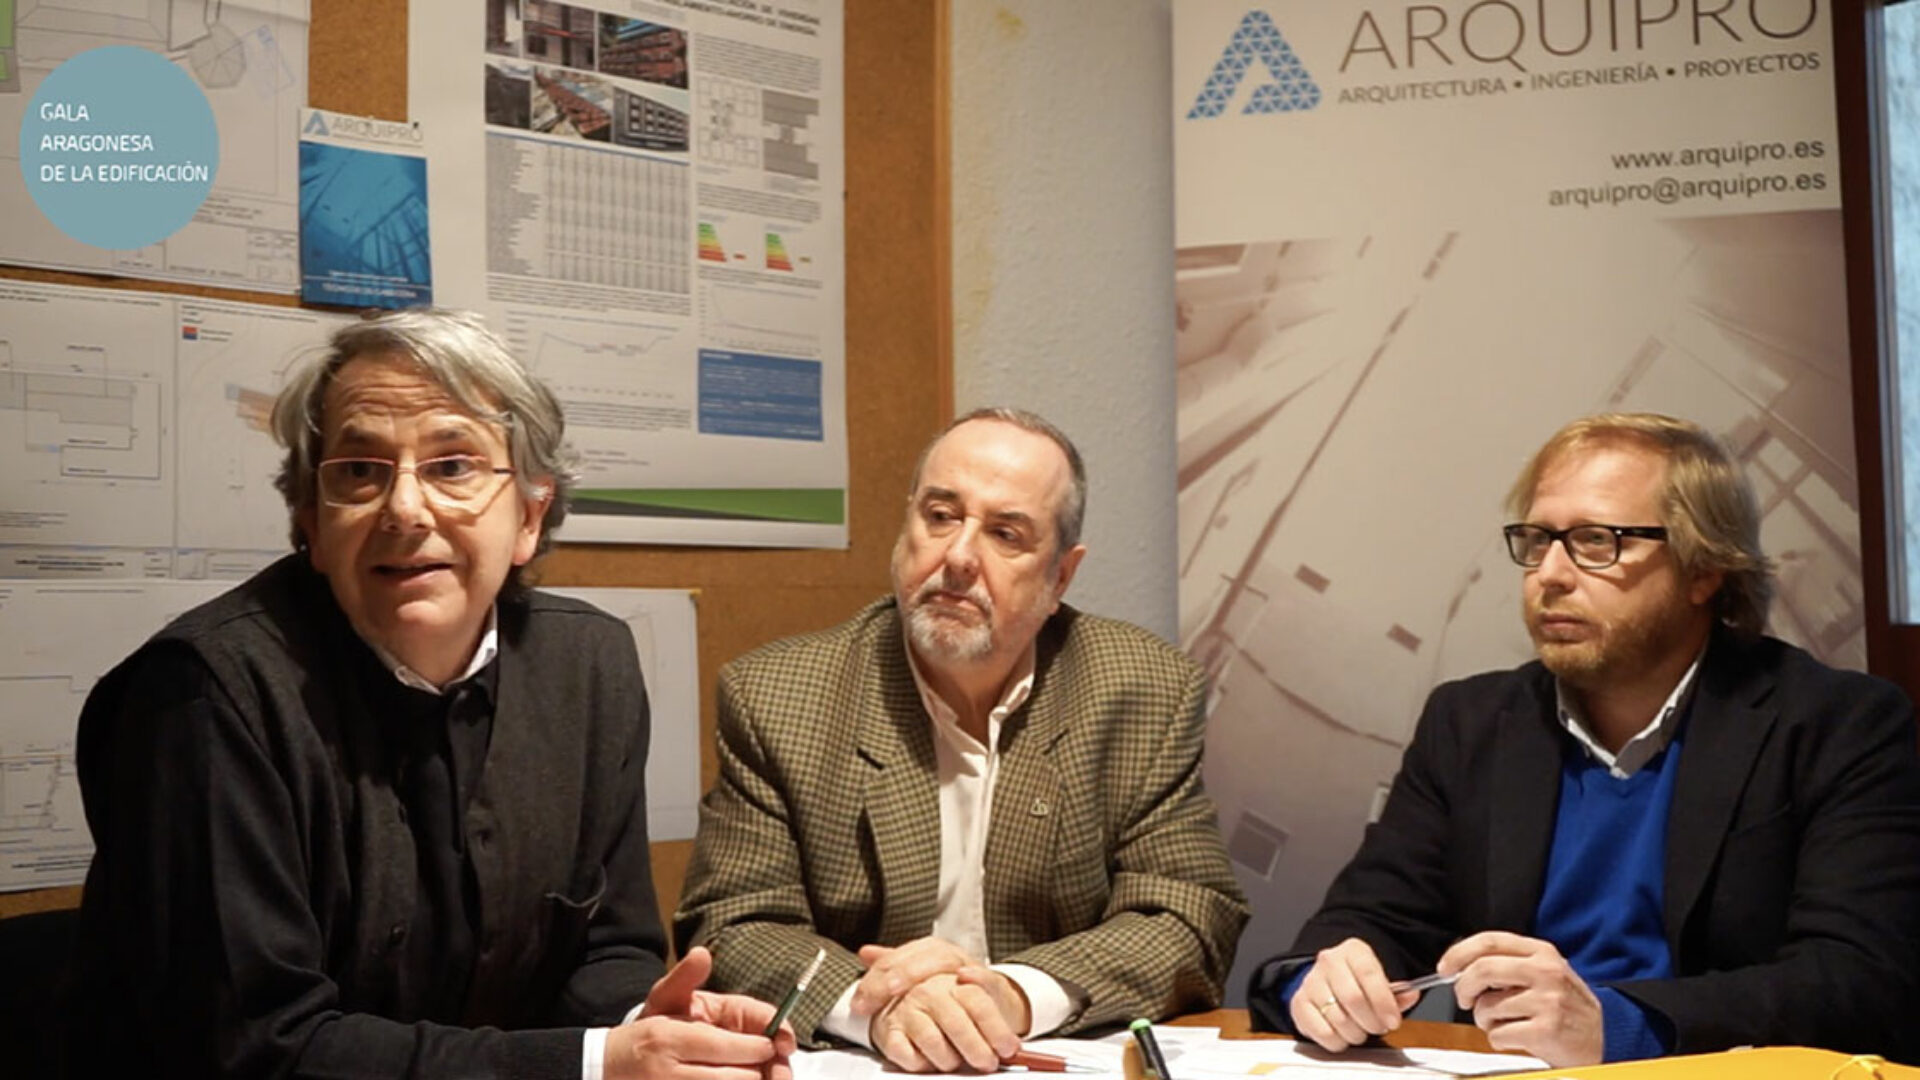 Mejor iniciativa de rehabilitación edificatoria en Aragón